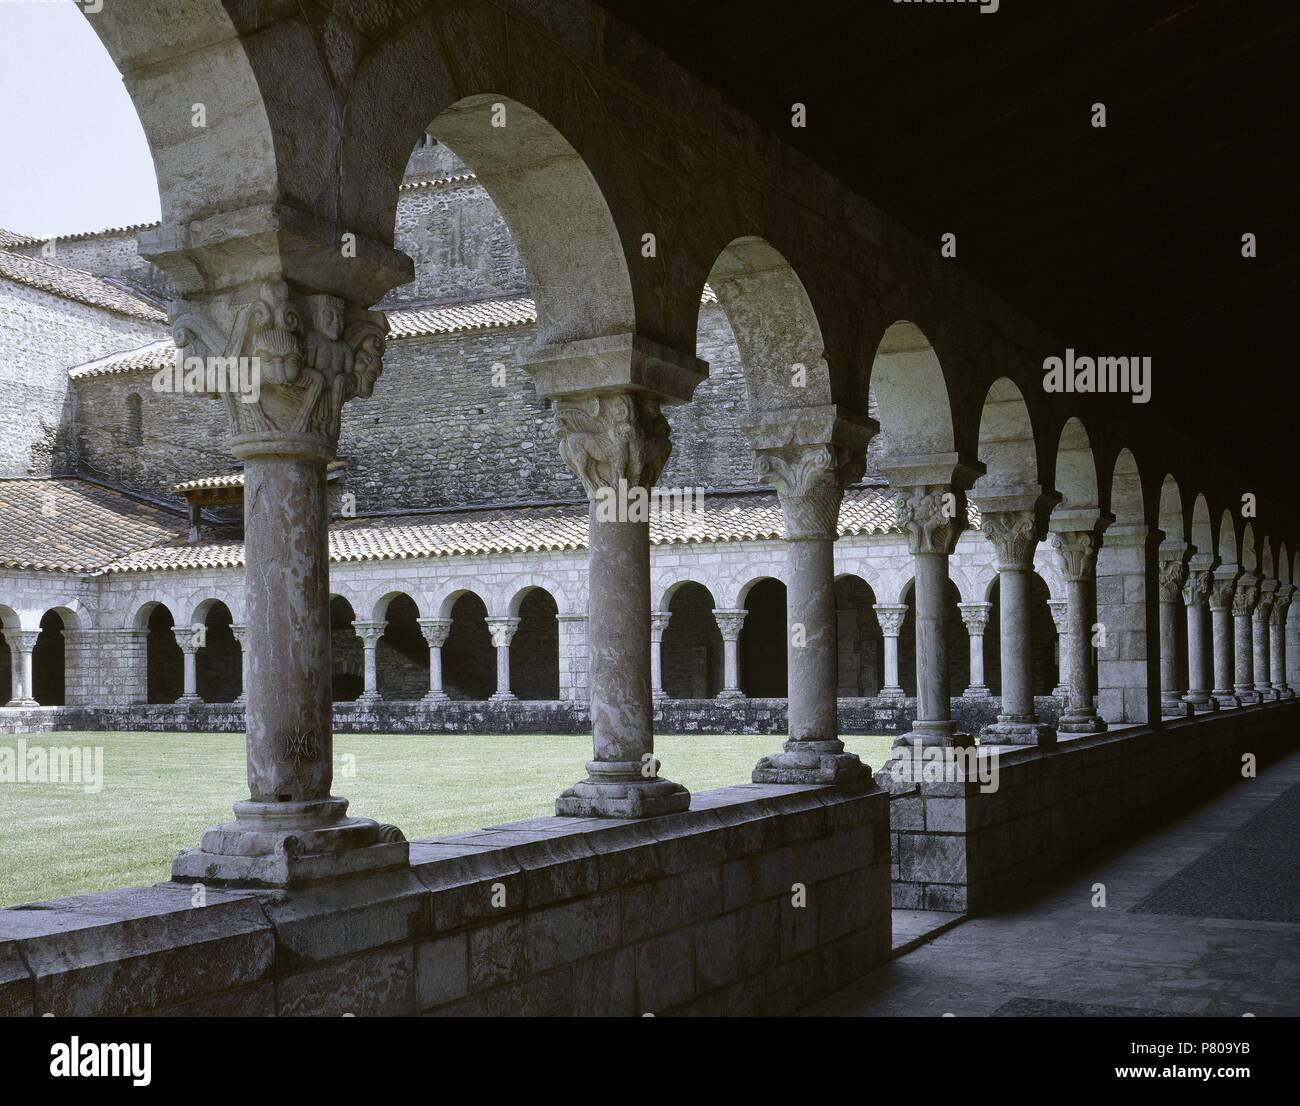 Kloster von Saint Michel de Cuxa. Benediktiner. Kreuzgang. Französische Pyrenäen, Mount Caniguo. Frankreich. Stockfoto